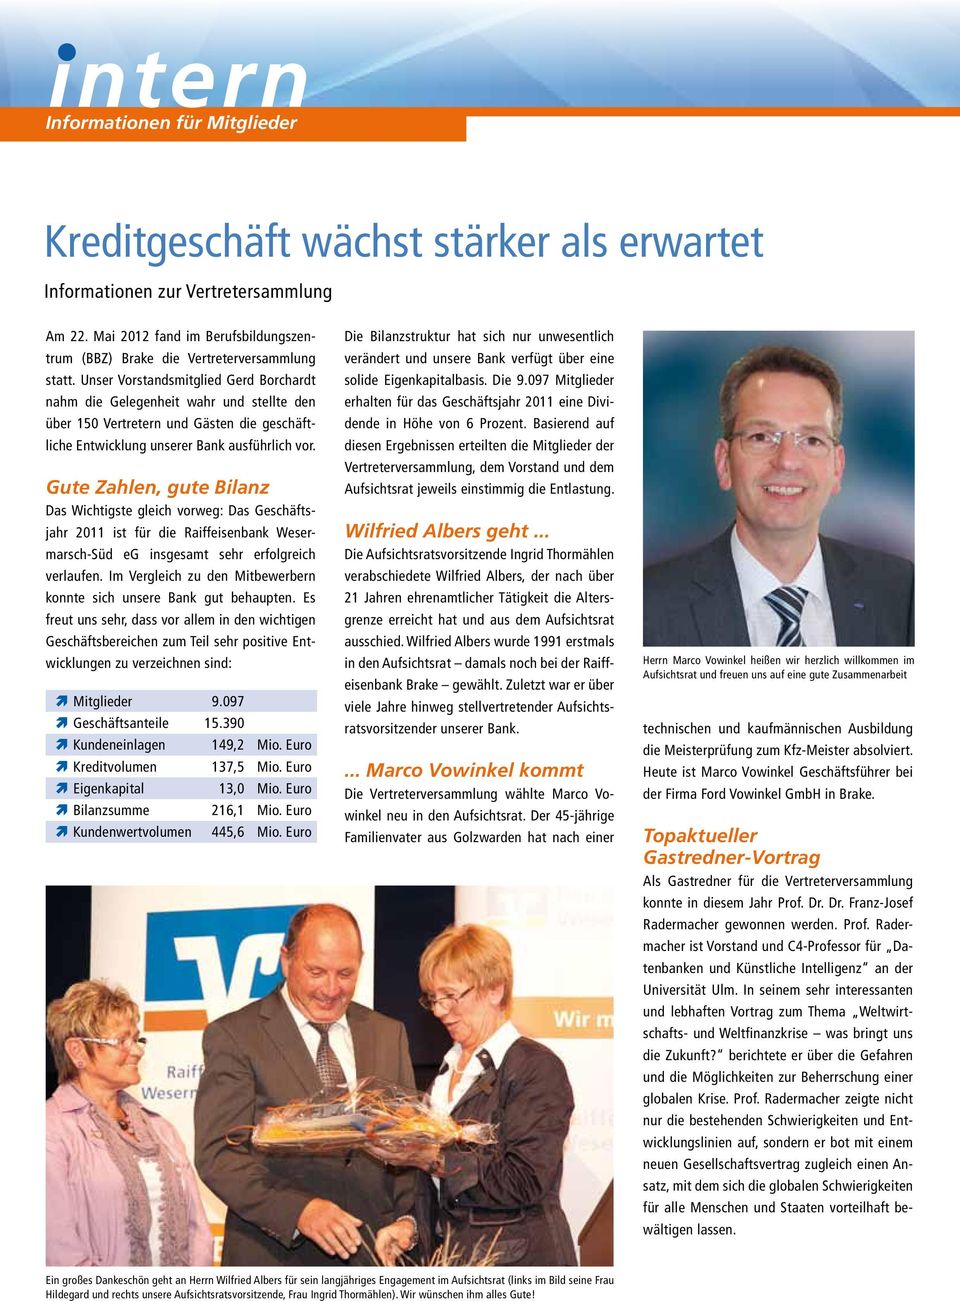 Gute Zahlen, gute Bilanz Das Wichtigste gleich vorweg: Das Geschäftsjahr 2011 ist für die Raiffeisenbank Wesermarsch-Süd eg insgesamt sehr erfolgreich verlaufen.